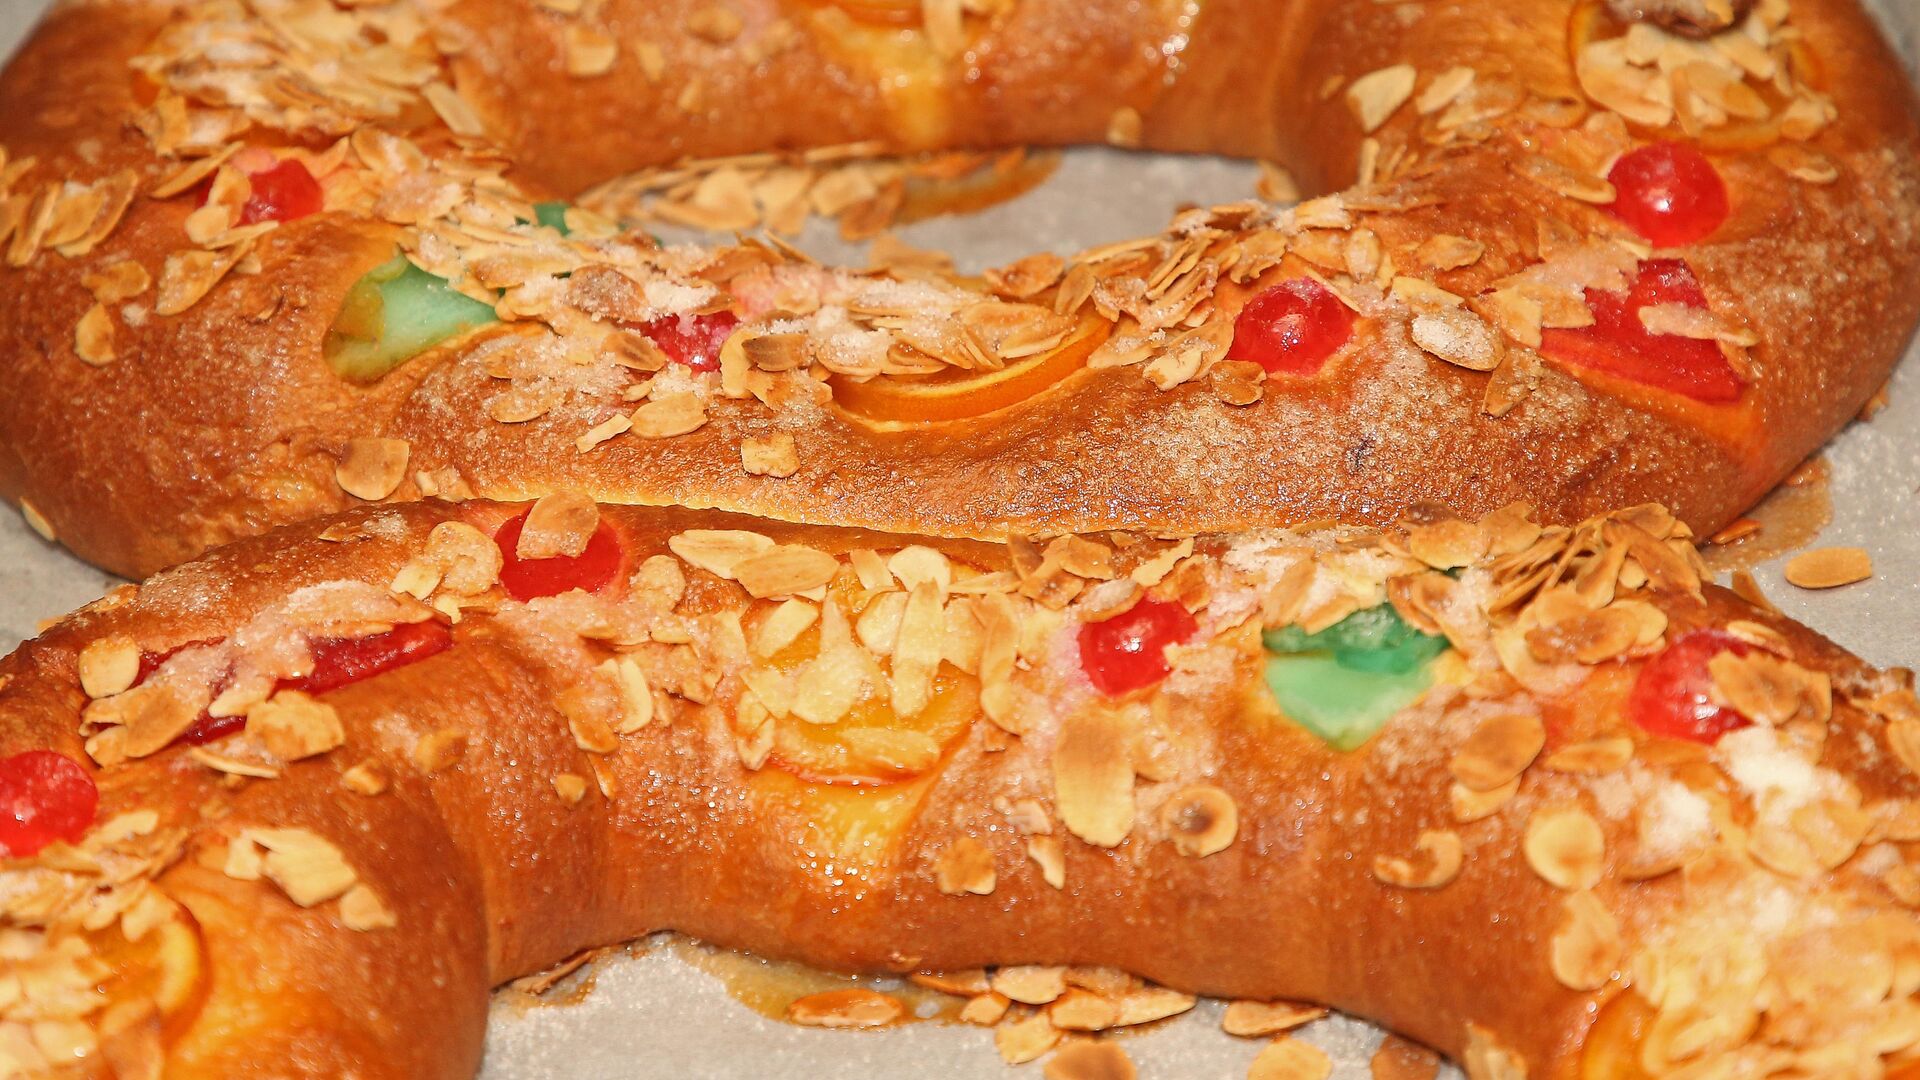 Diez pasteler&iacute;as donde comprar los roscones de Reyes m&aacute;s deliciosos de C&aacute;diz